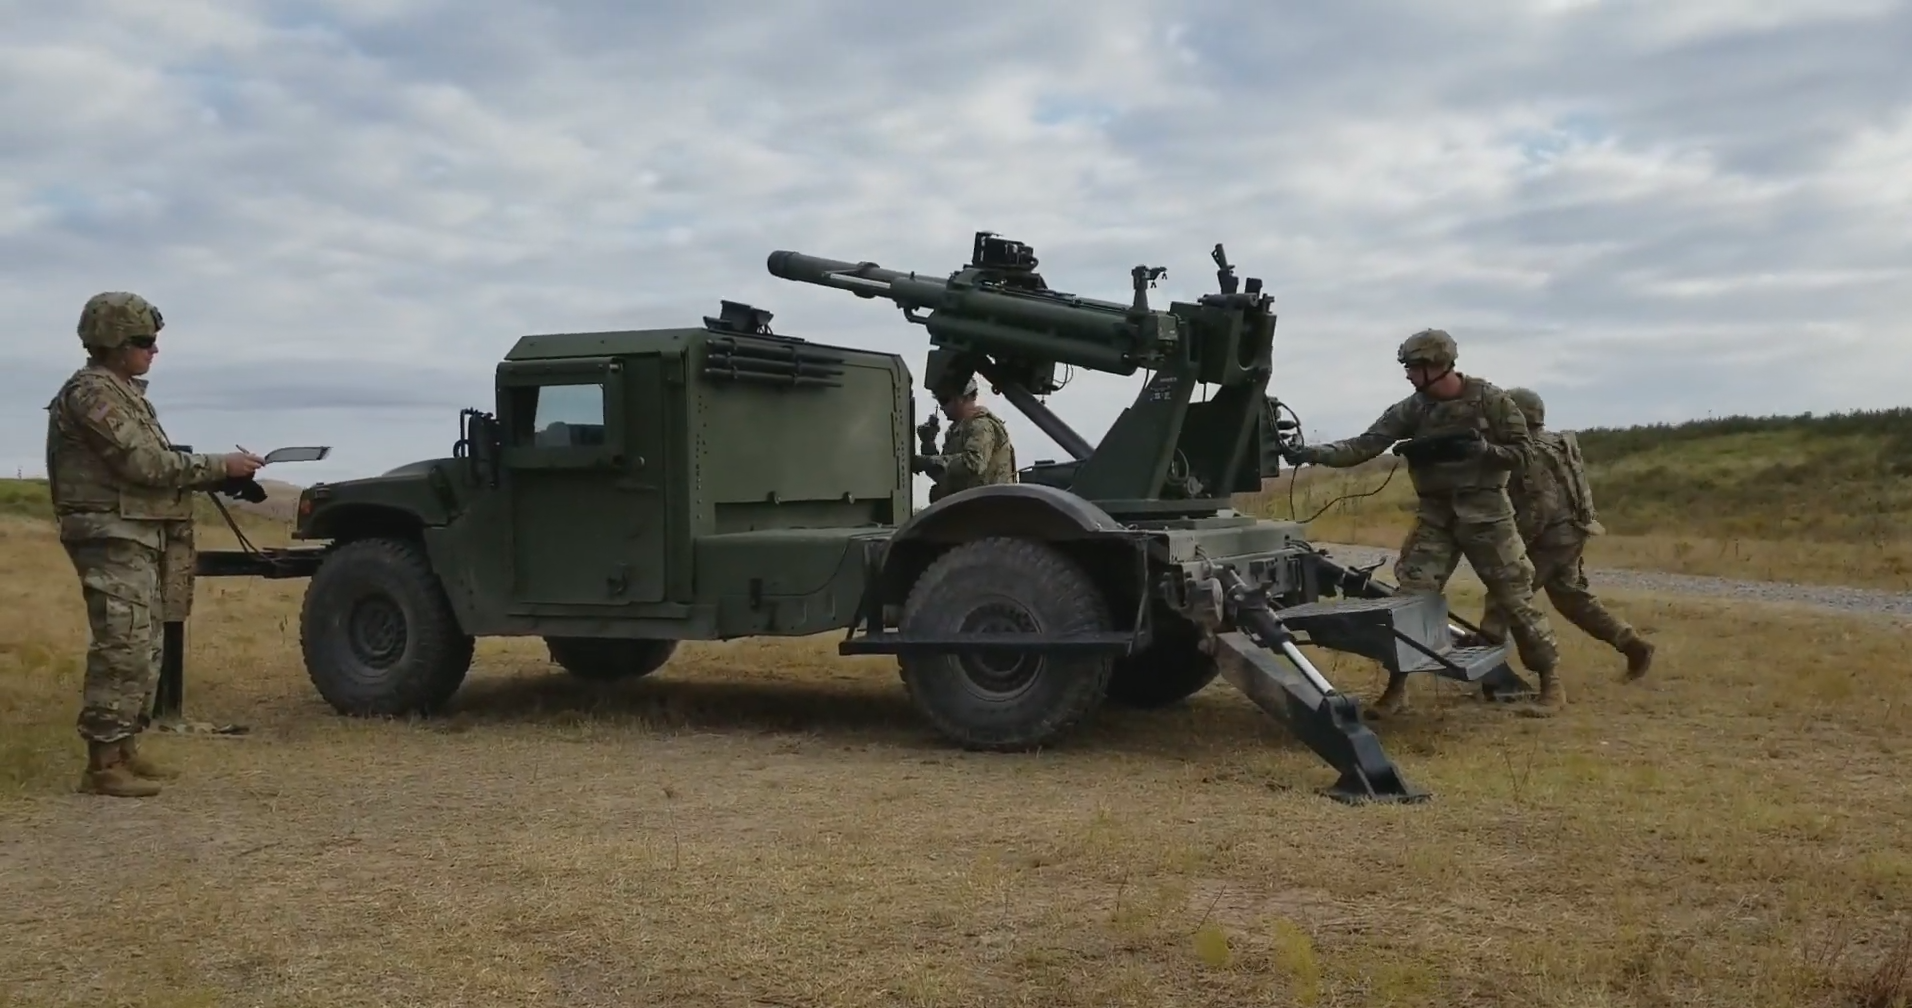 AM General zeigt mobiles Haubitzen-System CT-2 Hawkeye auf Basis des gepanzerten Fahrzeugs Humvee